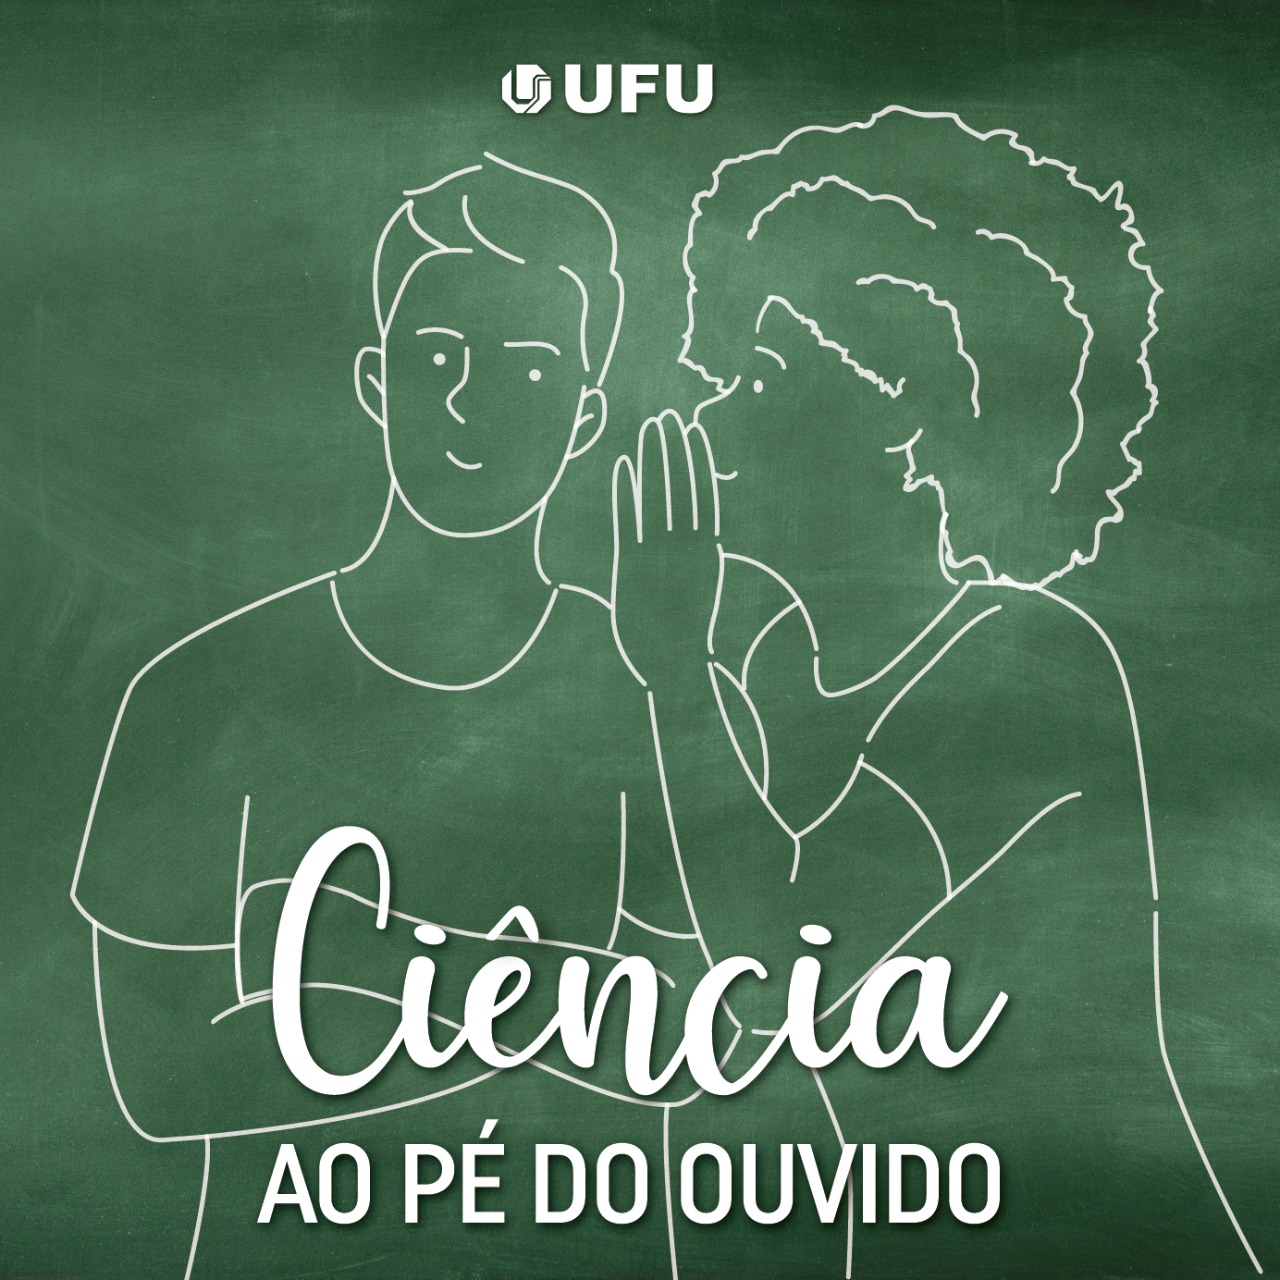 Primeira versão do logo, feita em 2020 pelo estagiário de design Abrão Osorio Júnior e pelo publicitário João Ricardo Oliveira